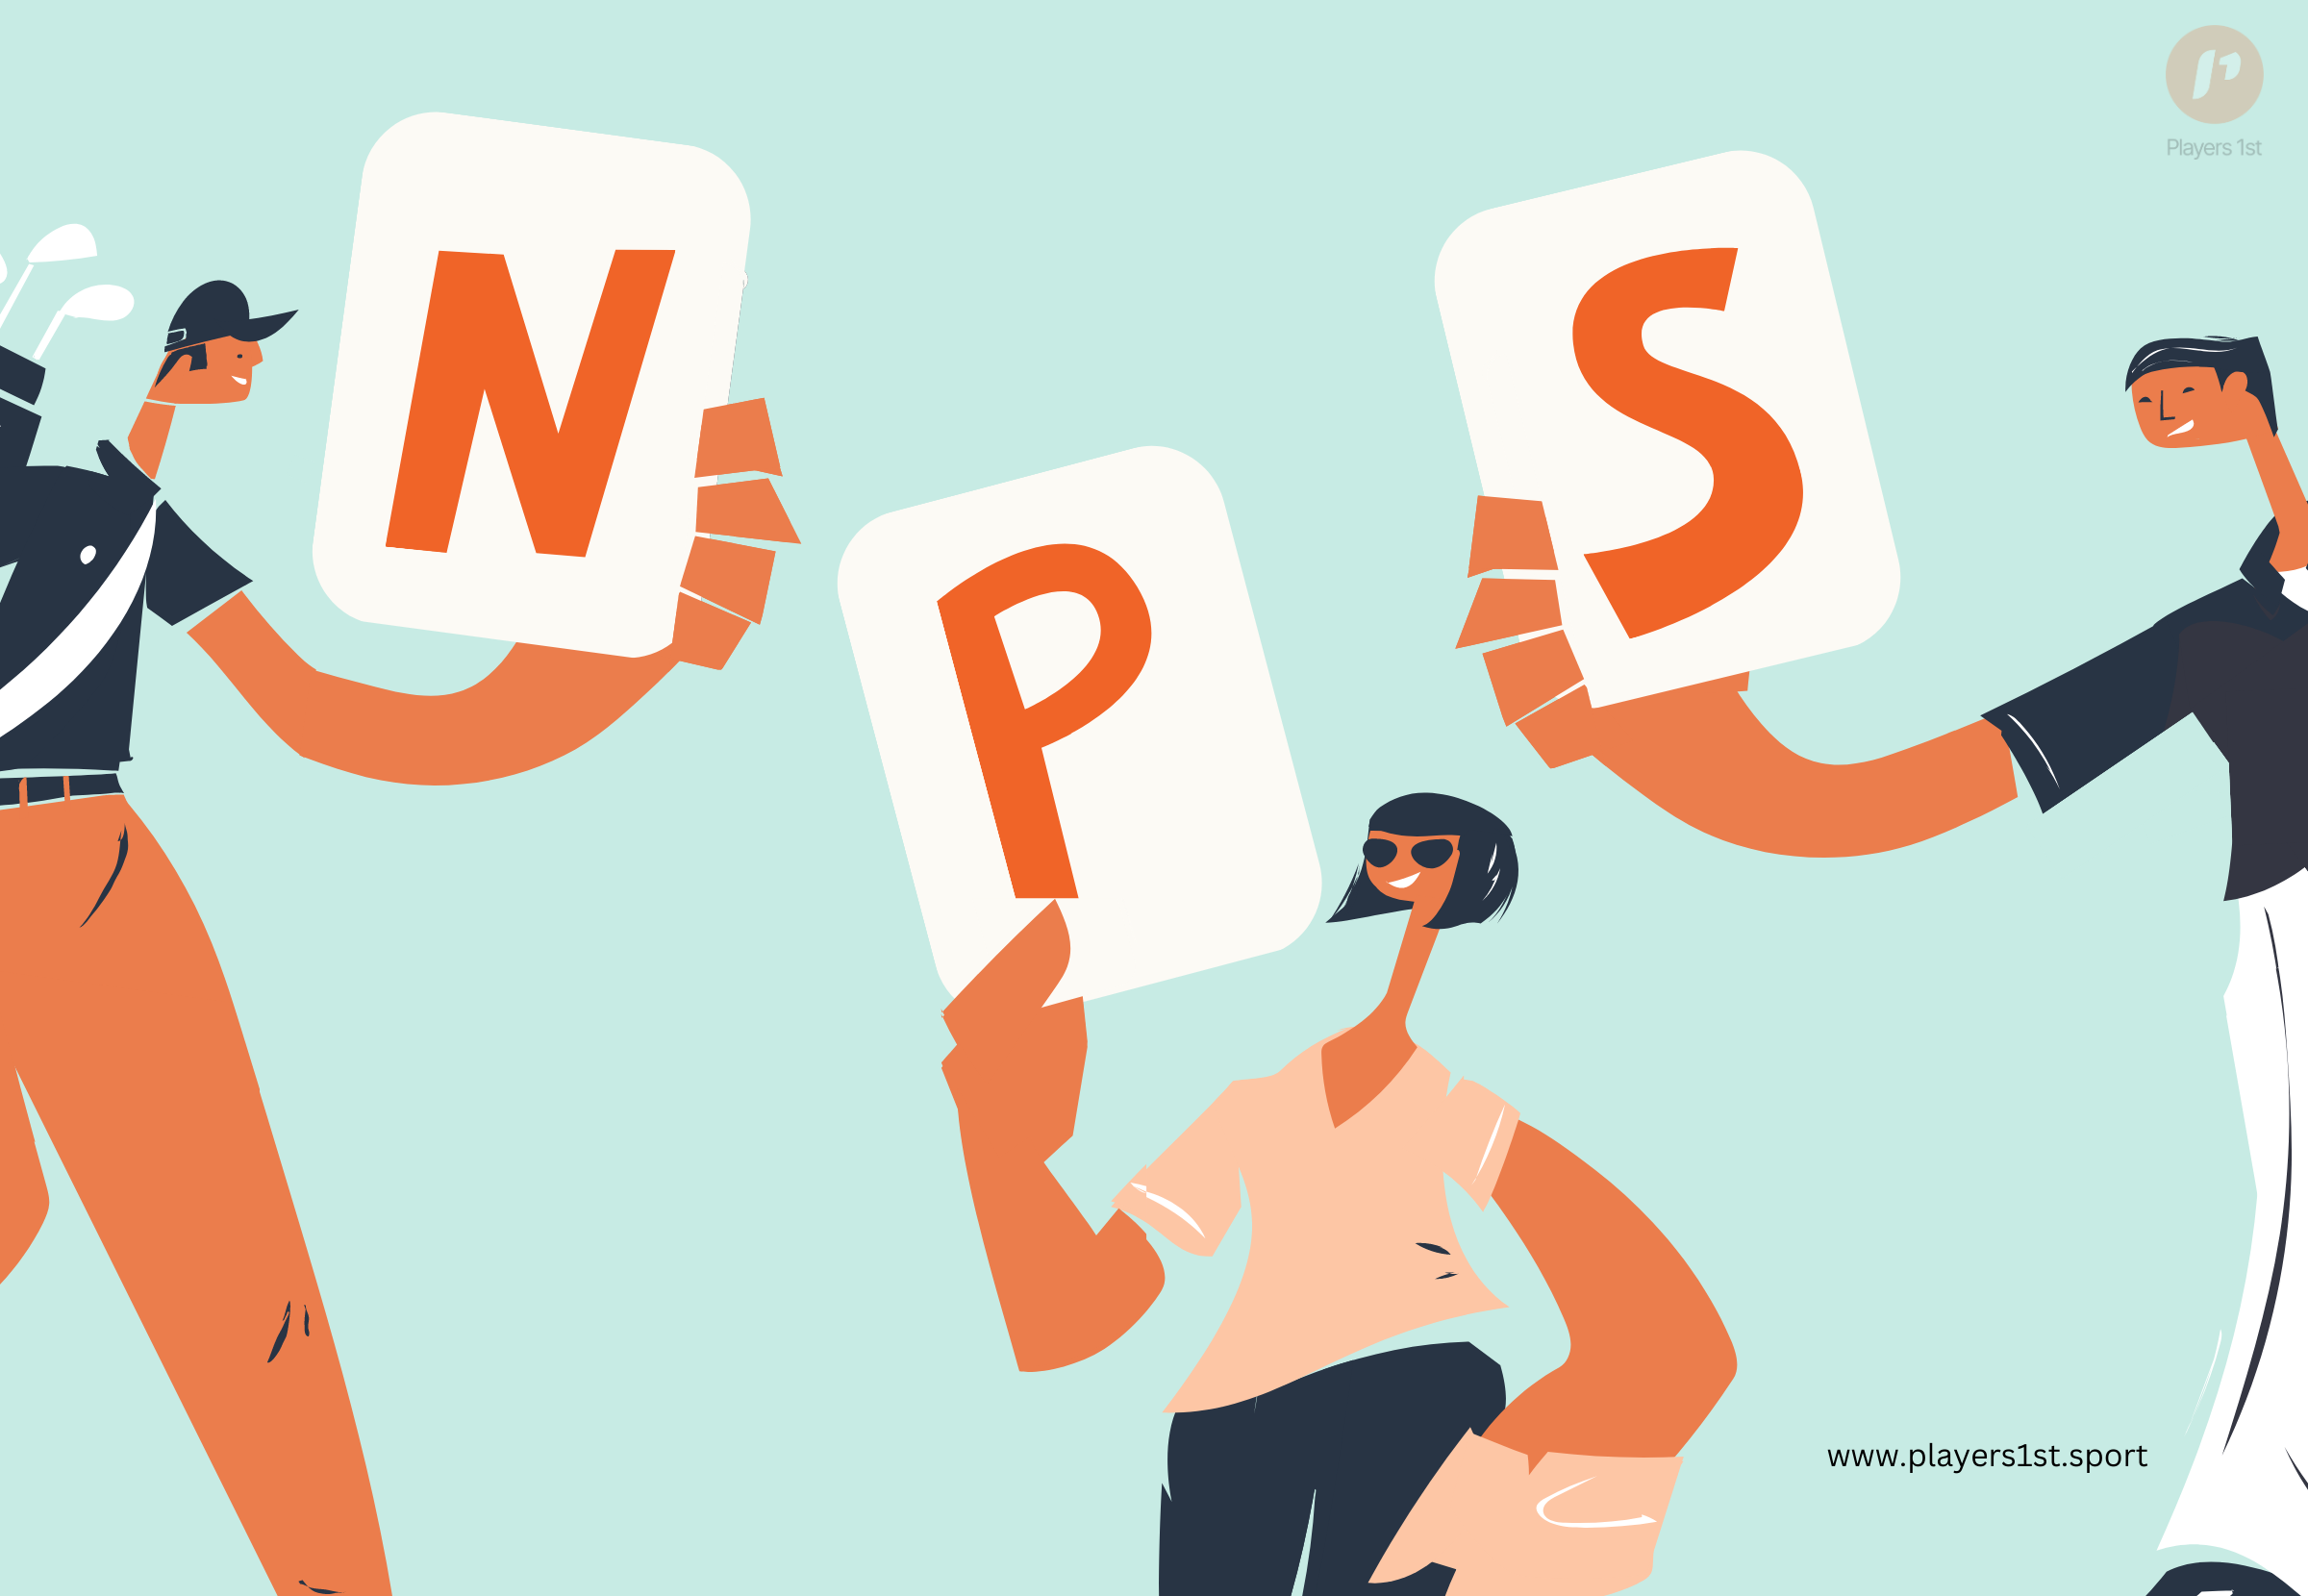 What is Net Promoter Score (NPS)